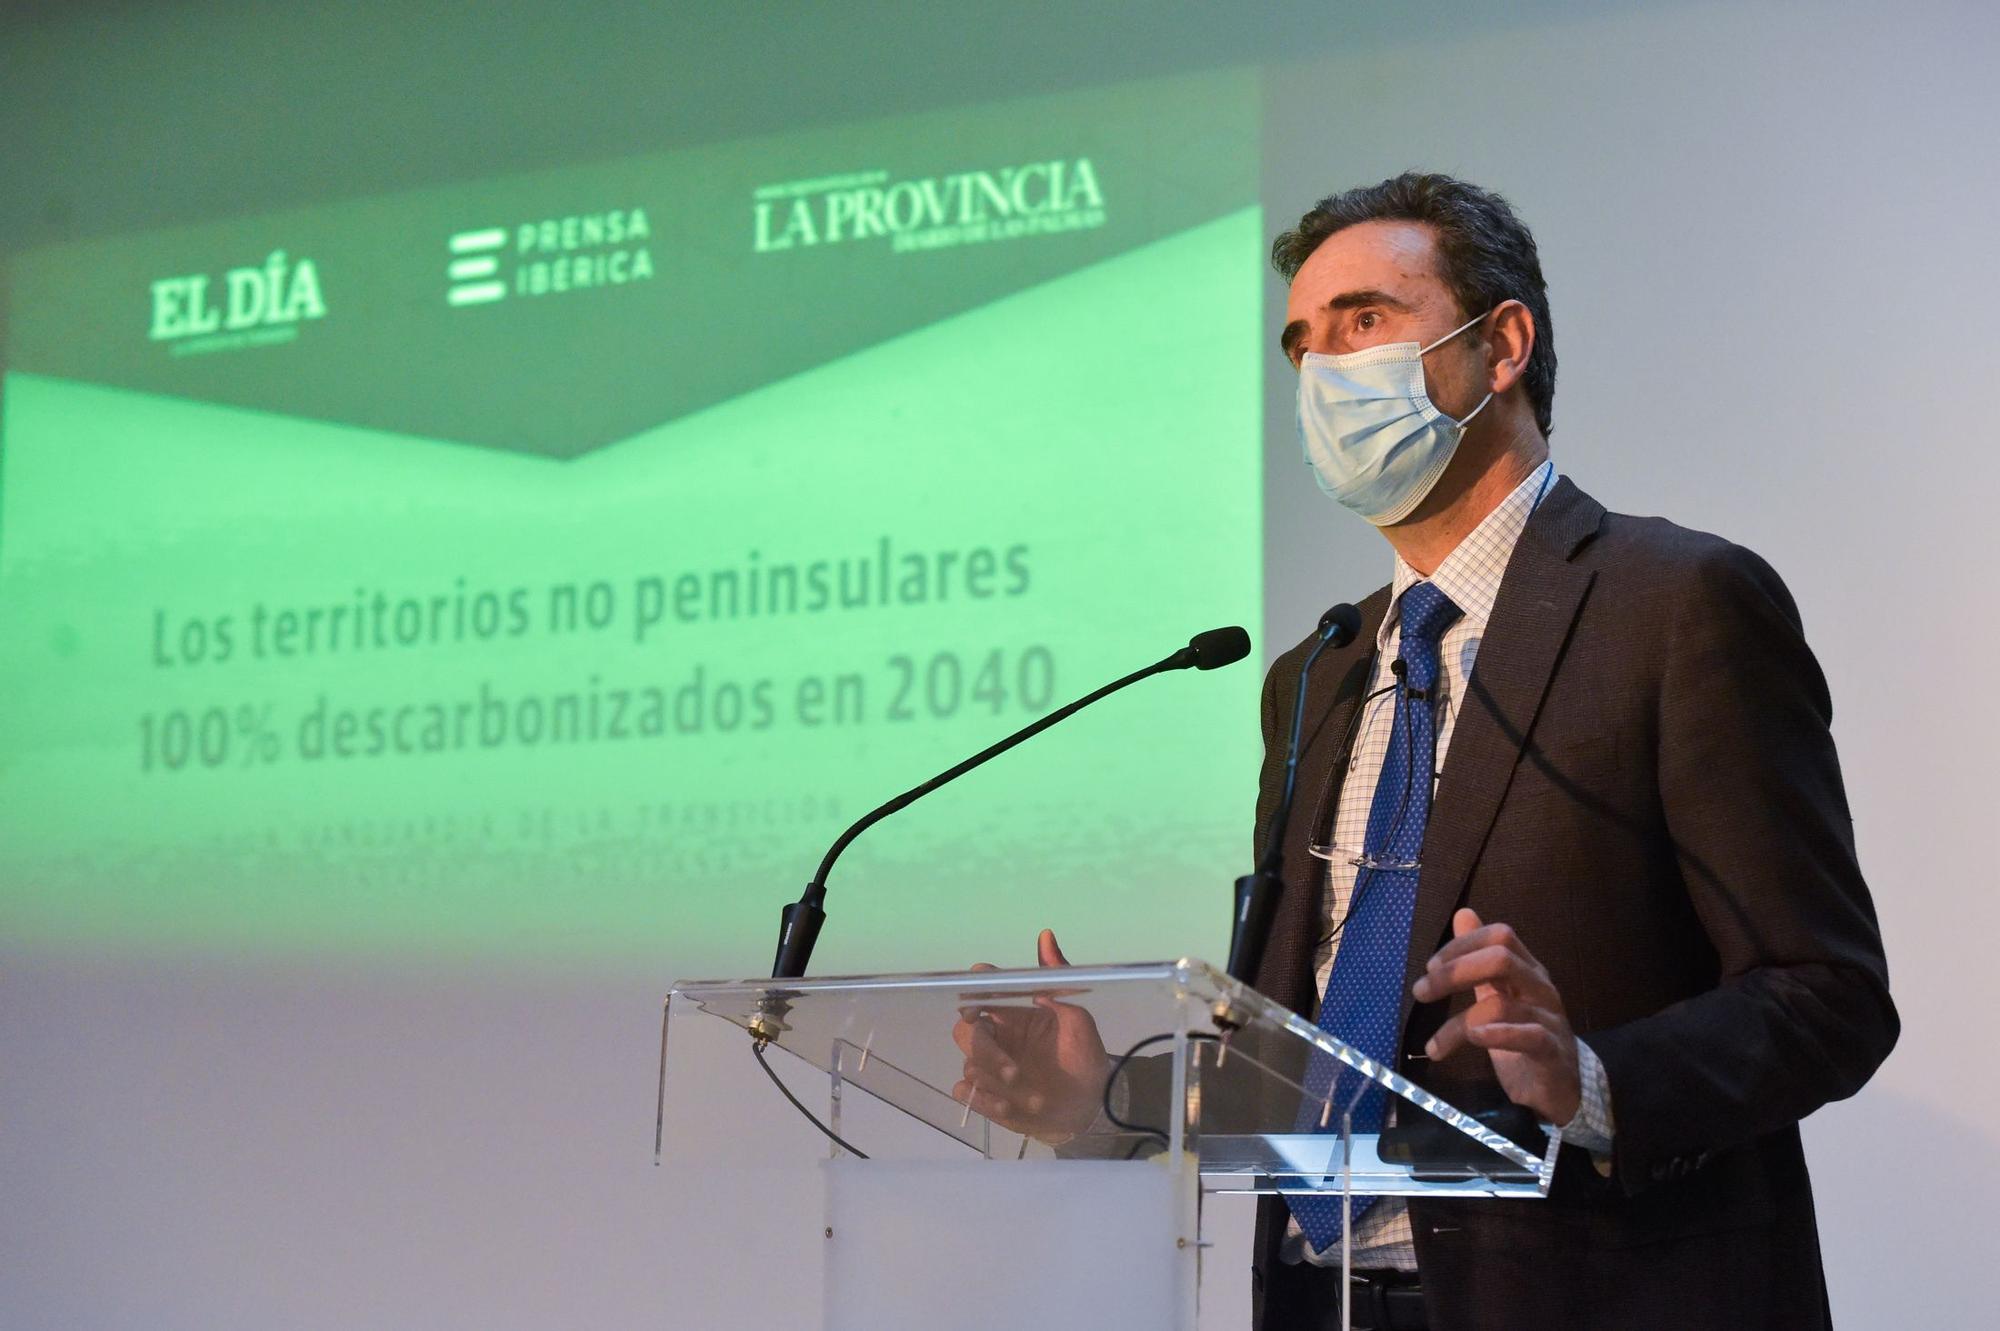 Endesa y Prensa Ibérica organizan el encuentro digital Descarbonización Canarias